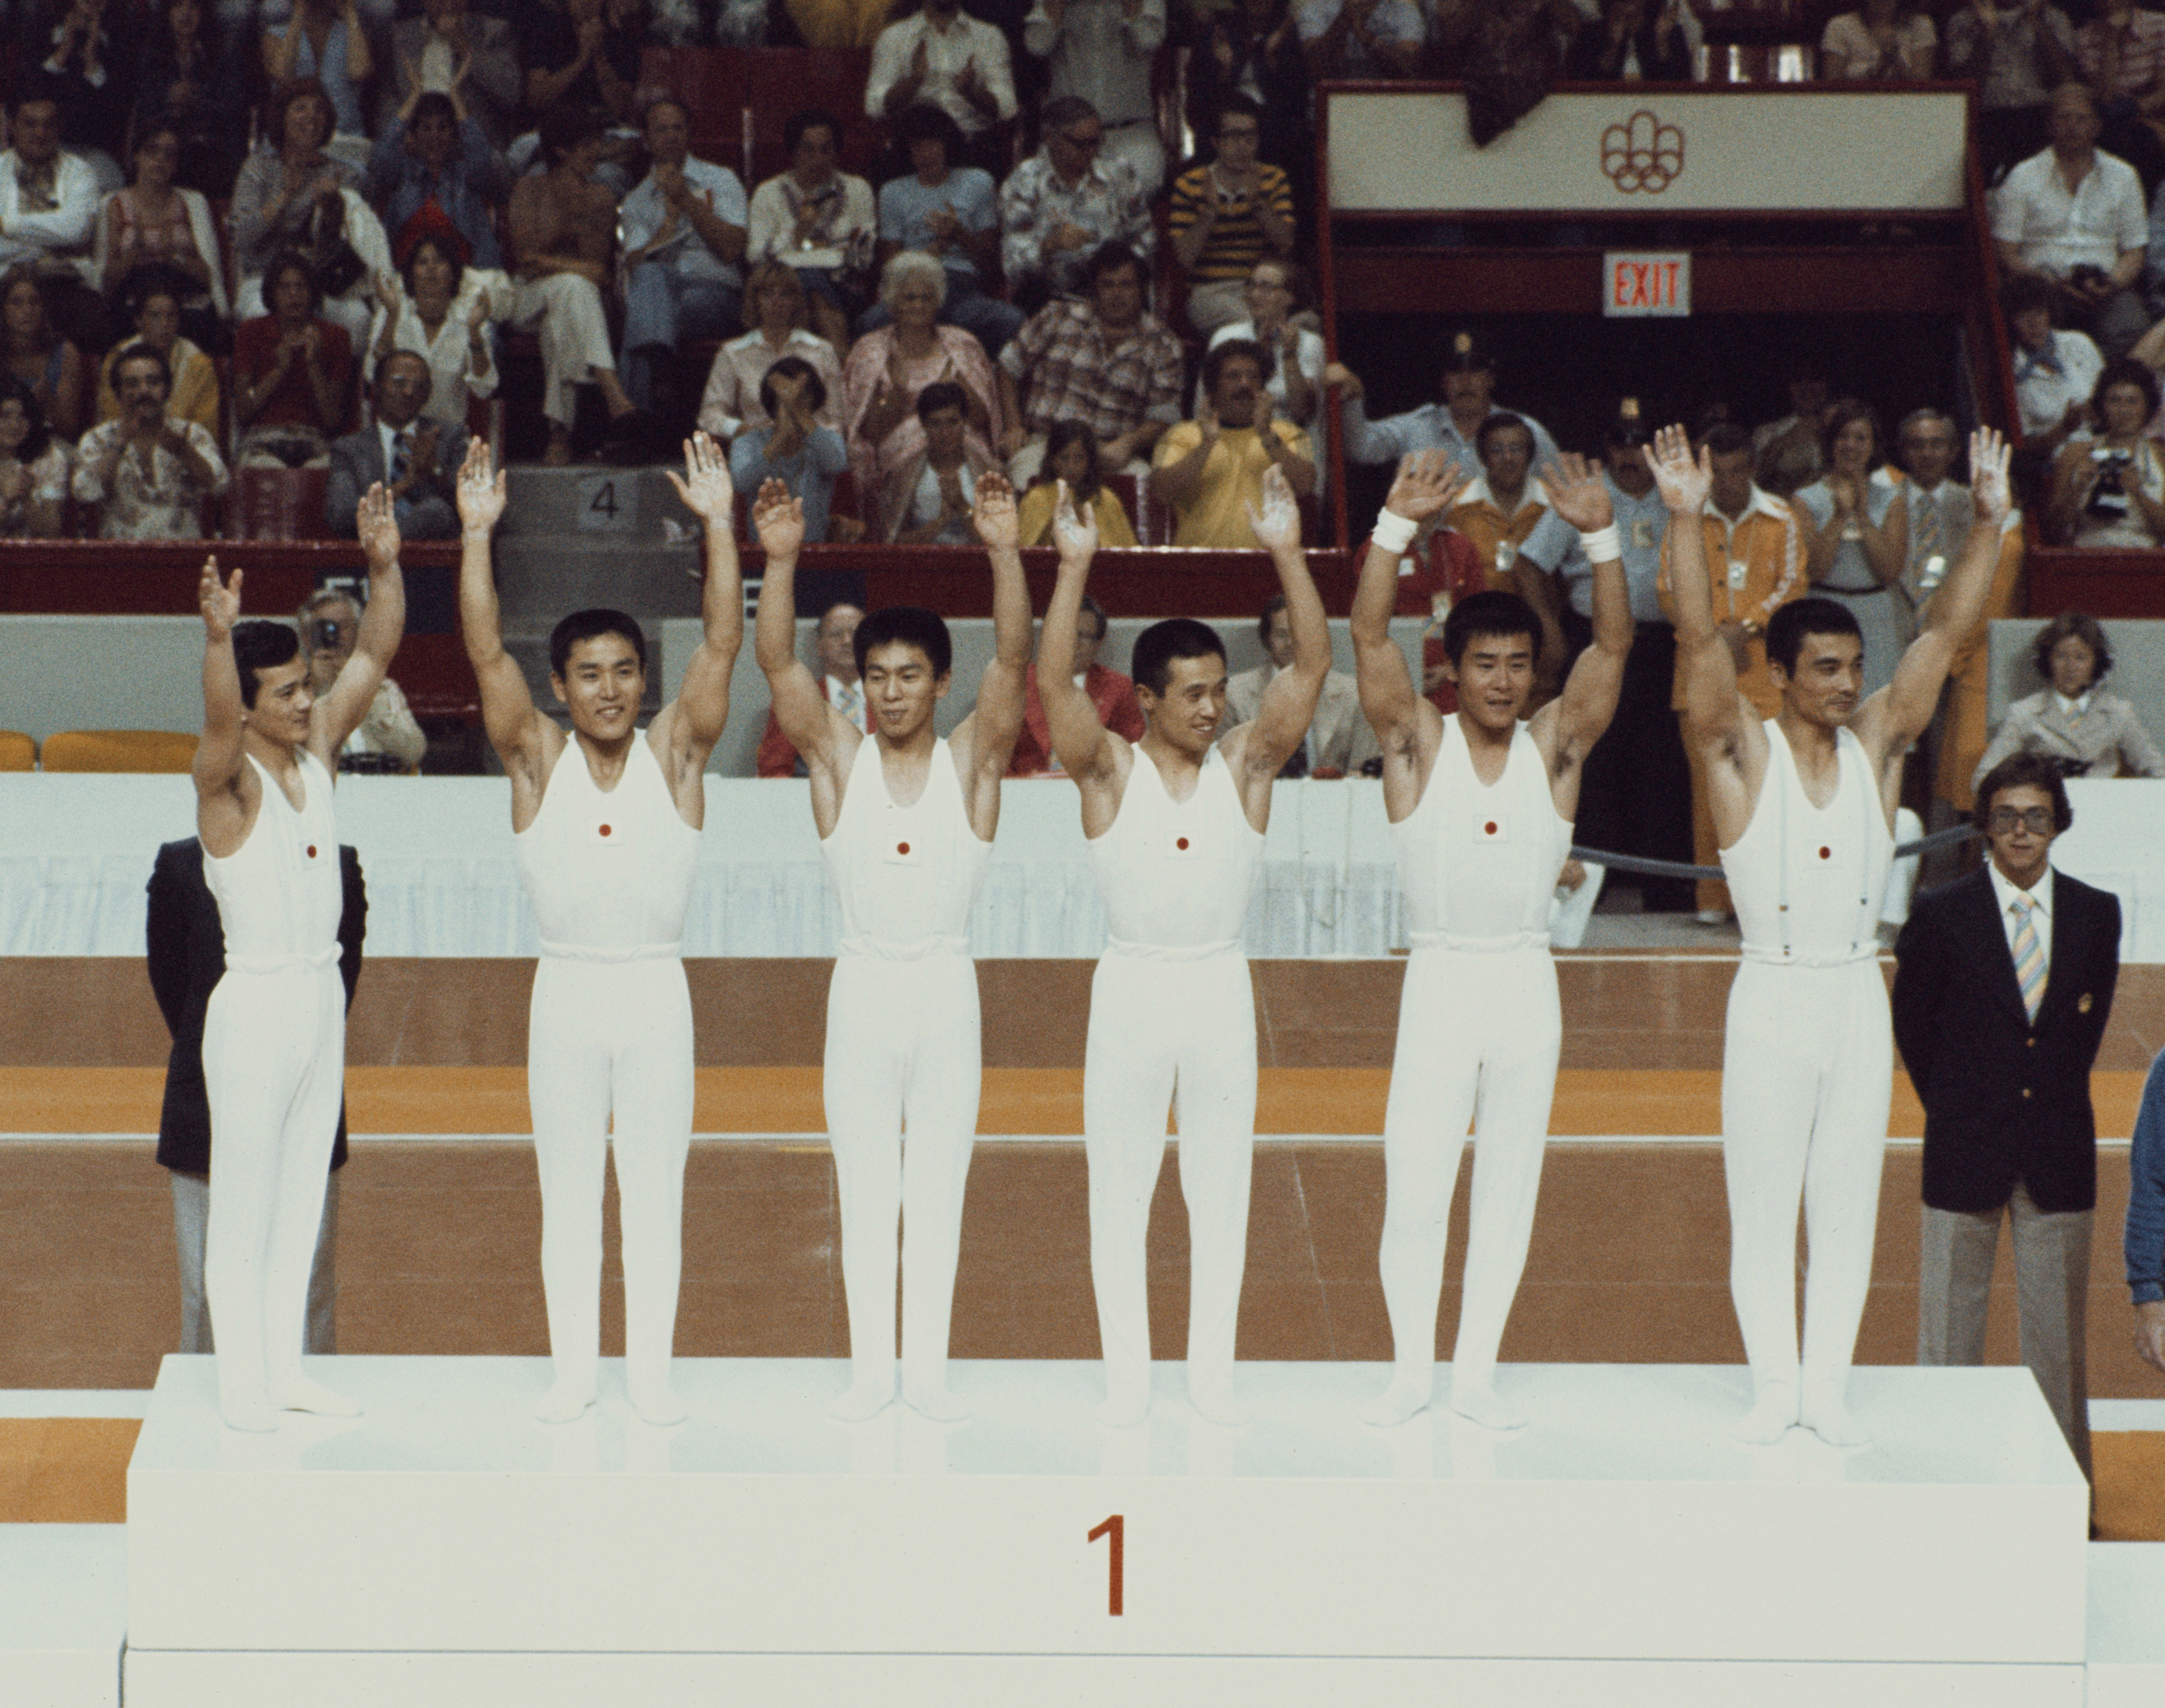 La squadra di ginnastica giapponese al momento della premiazione della gara a squadre